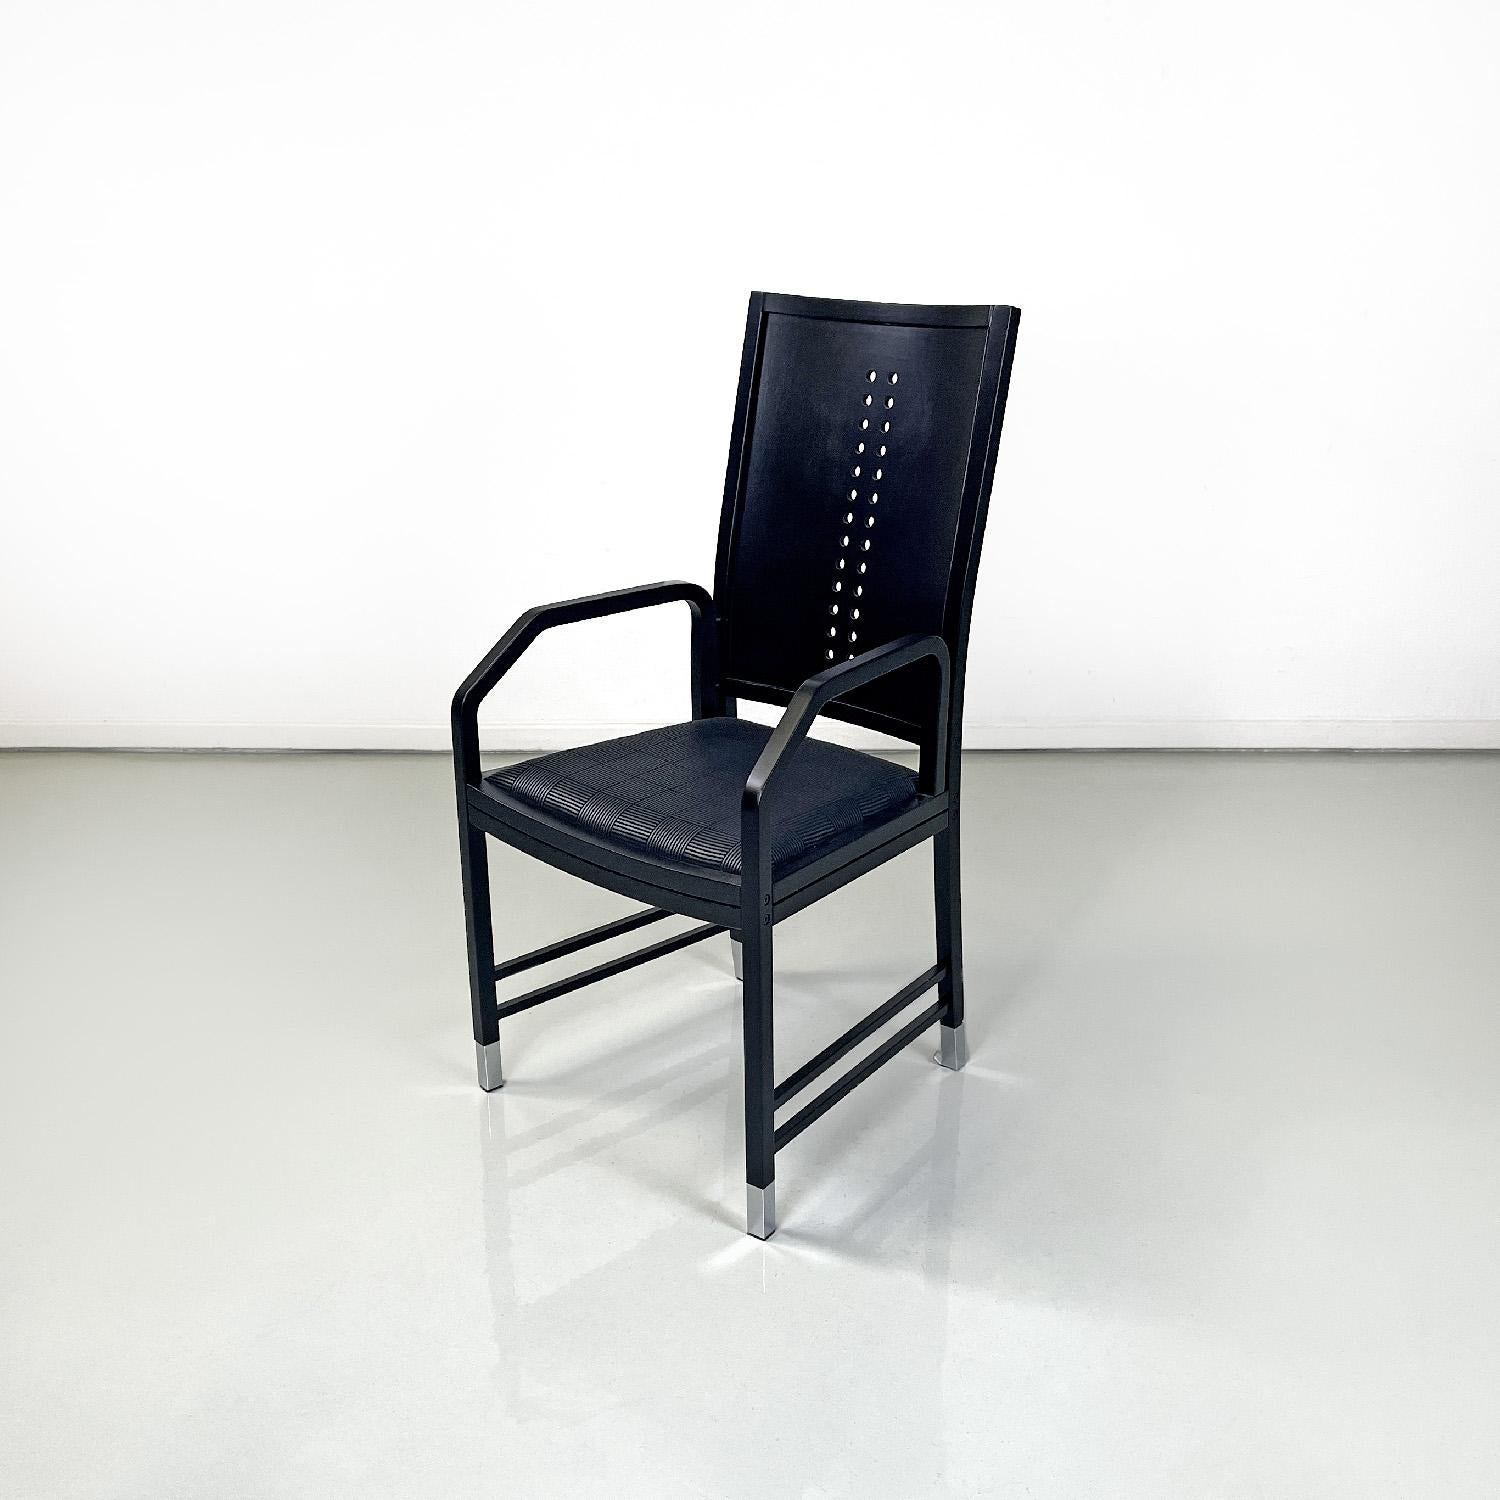 Chaises modernes autrichiennes en bois noir par Ernst W. Beranek pour Thonet, années 1990
Ensemble de cinq chaises avec accoudoirs en bois laqué noir, finition mate. L'assise est rembourrée et recouverte d'un tissu noir avec des décorations